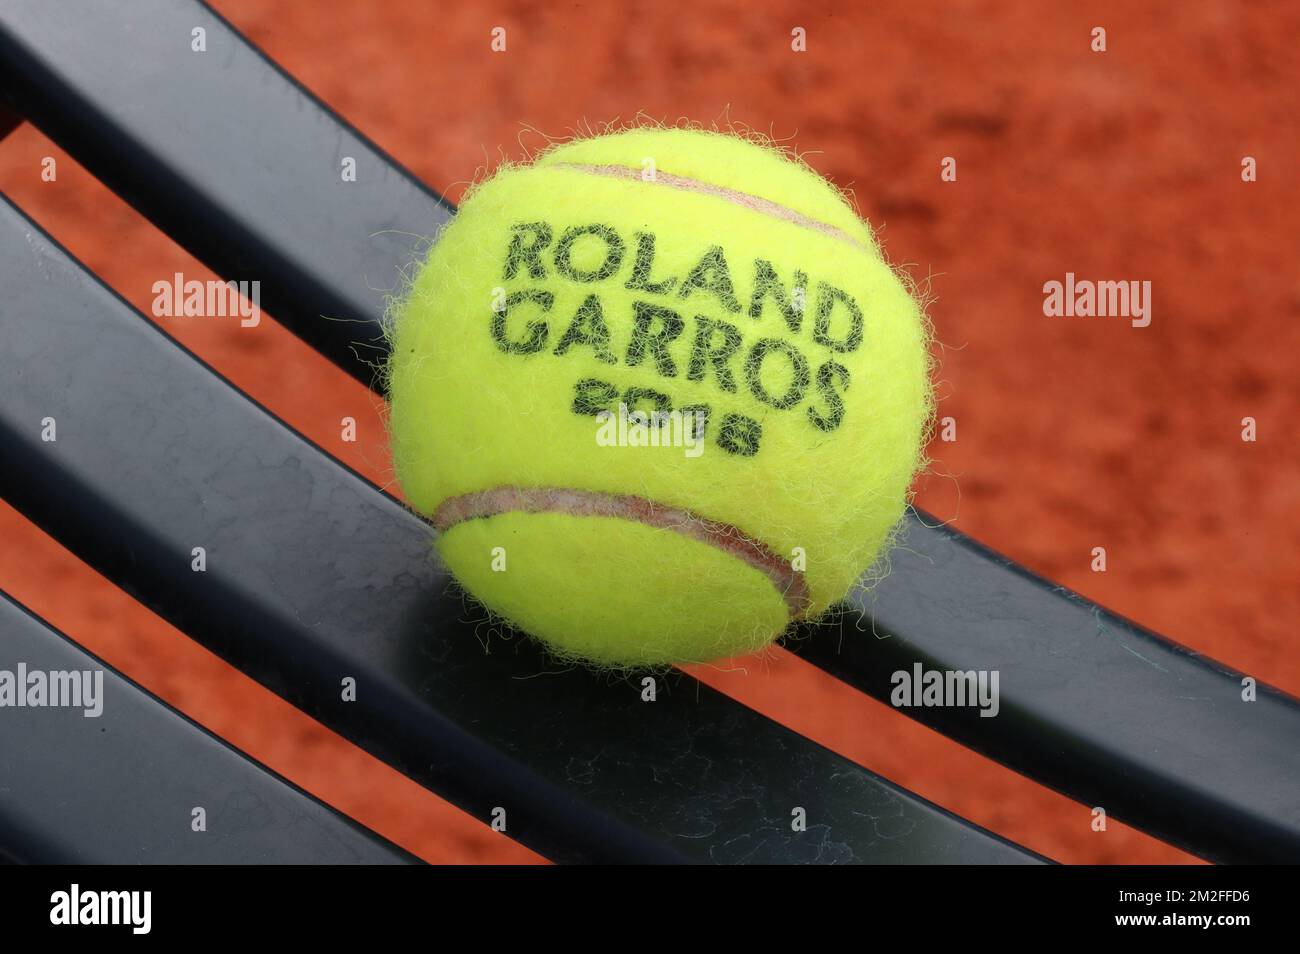 Abbildung zeigt Tennisbälle während eines Trainings im Vorfeld des Roland  Garros French Open Tennisturniers in Paris, Frankreich, Donnerstag, den 24.  Mai 2018. Die Hauptziehung des diesjährigen Roland Garros Grand Slam findet  vom